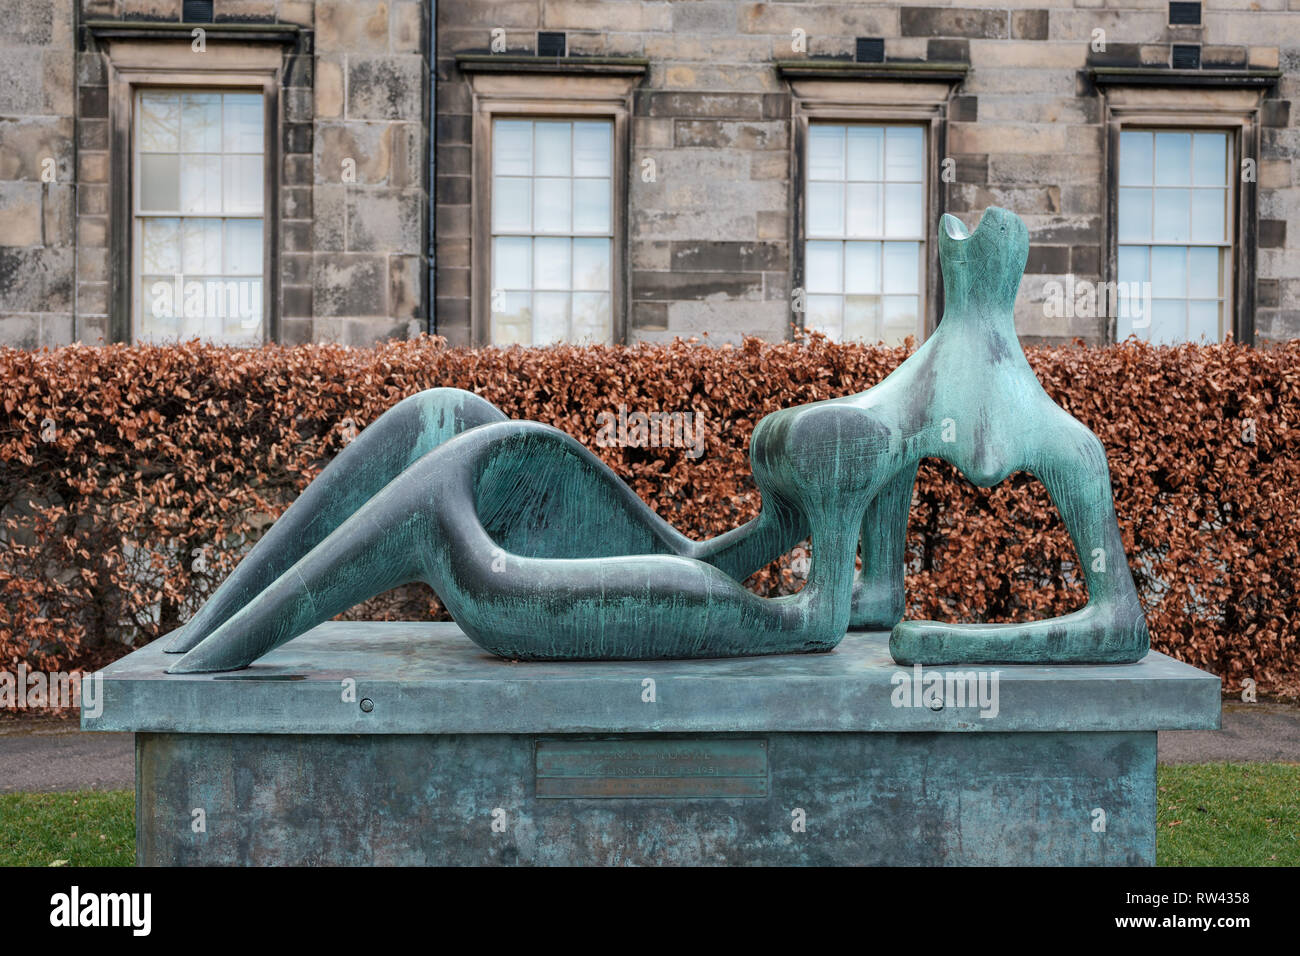 Un semi-astratti arte moderna scultura della forma umana al di fuori della Scottish Galleria Nazionale di Arte Moderna (moderno uno) a Edimburgo, Scozia Foto Stock